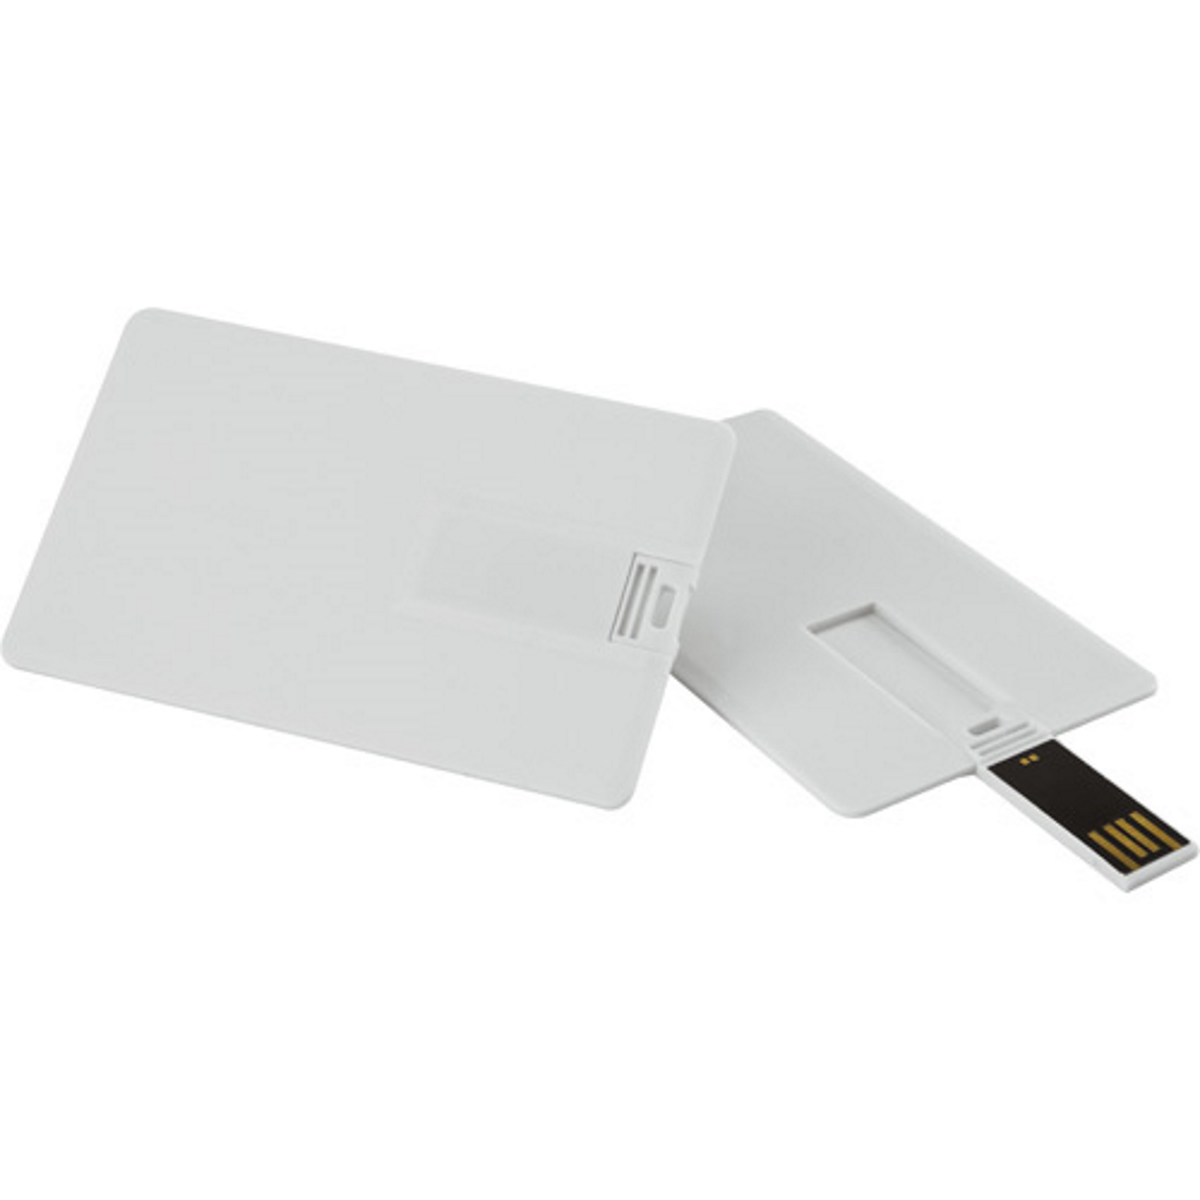 ® Kreditkarte (Weiss, USB-Stick USB 8 GB) GERMANY